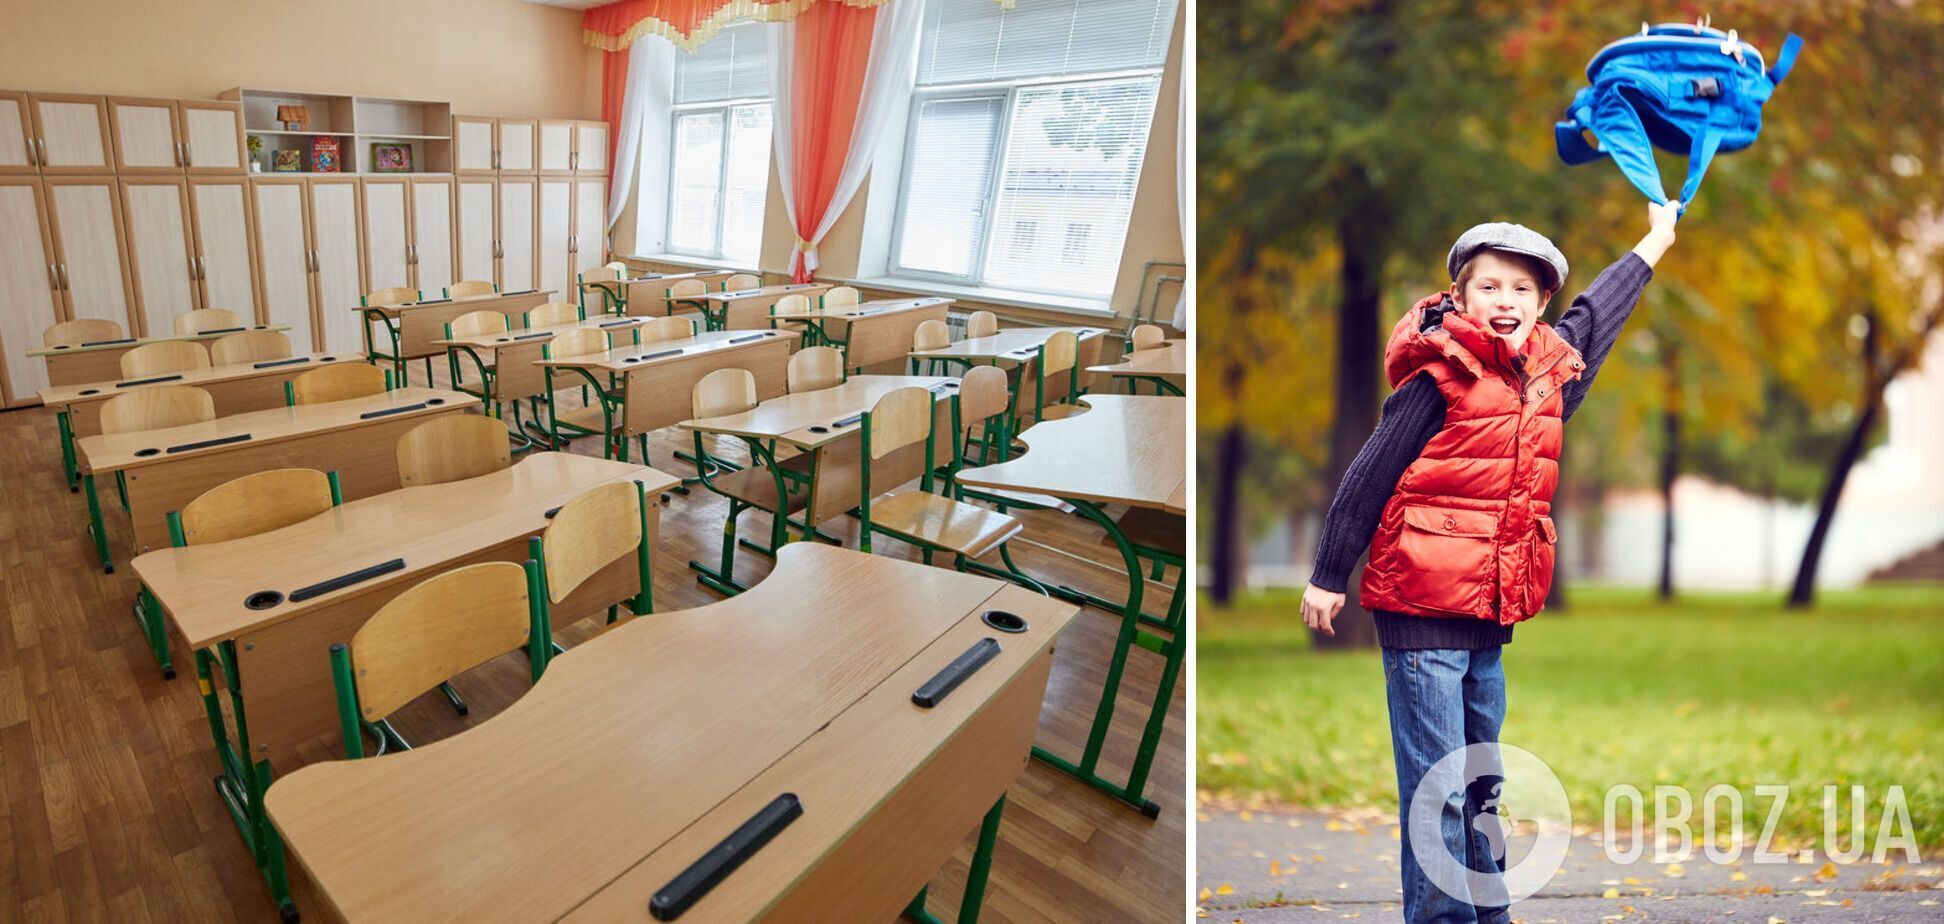 Осенние каникулы для украинских школьников стартуют 25 октября